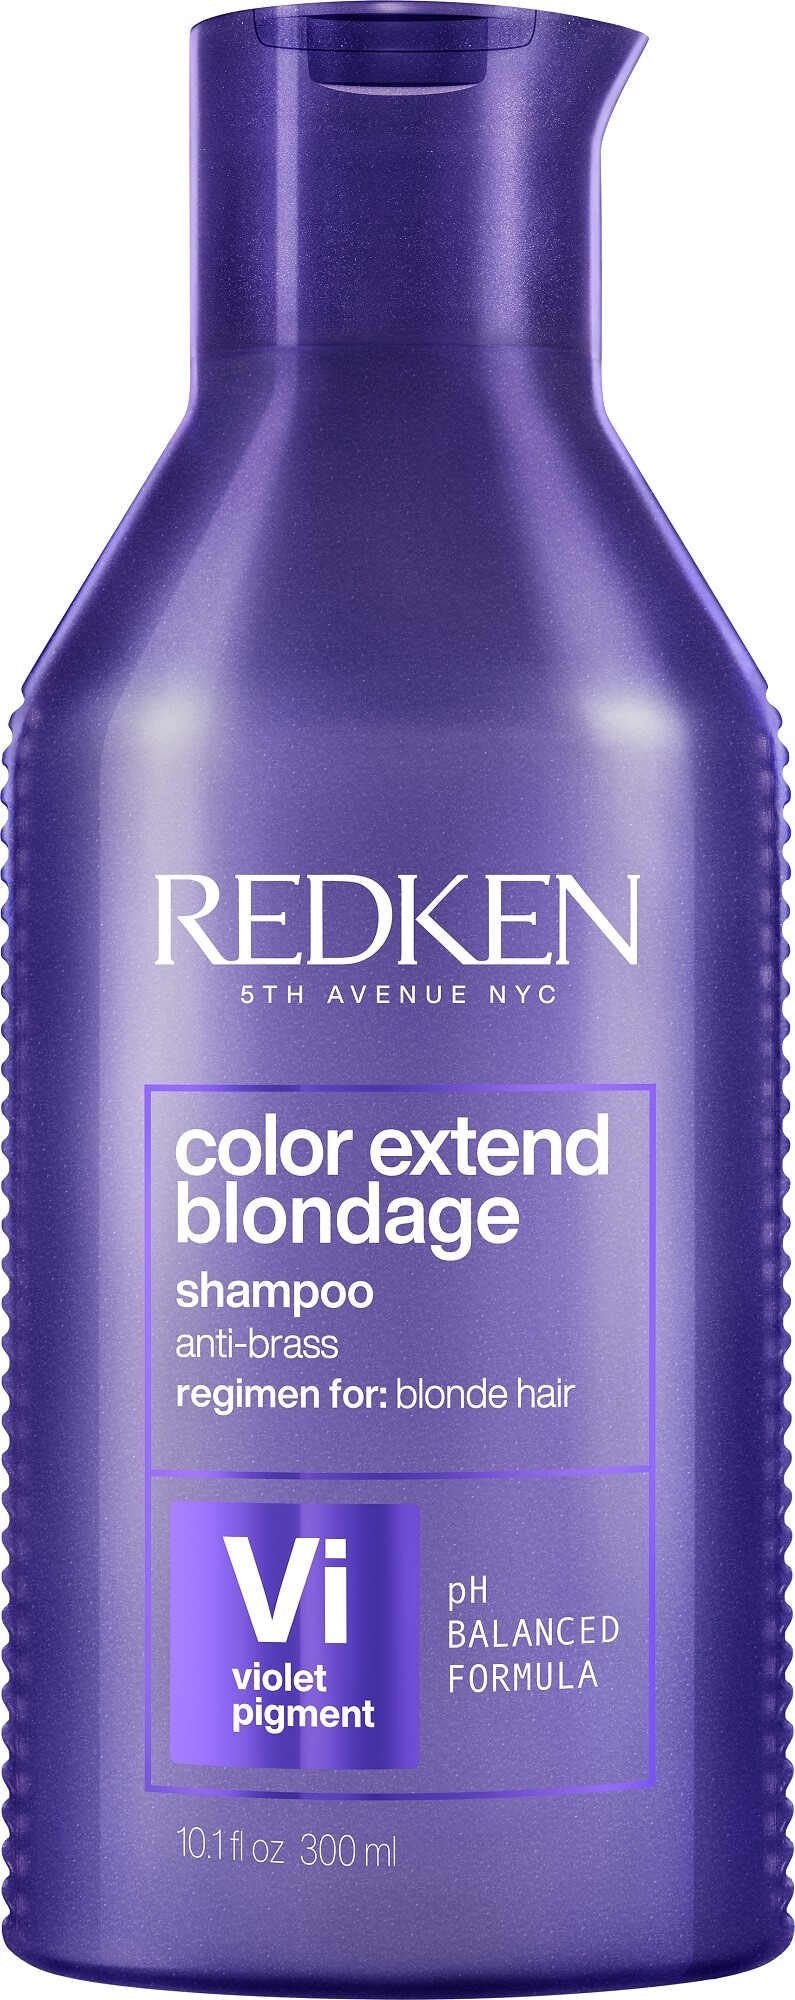 Redken Šampon neutralizující žluté tóny vlasů Color Extend (Blondage Shampoo) 300 ml - nové balení